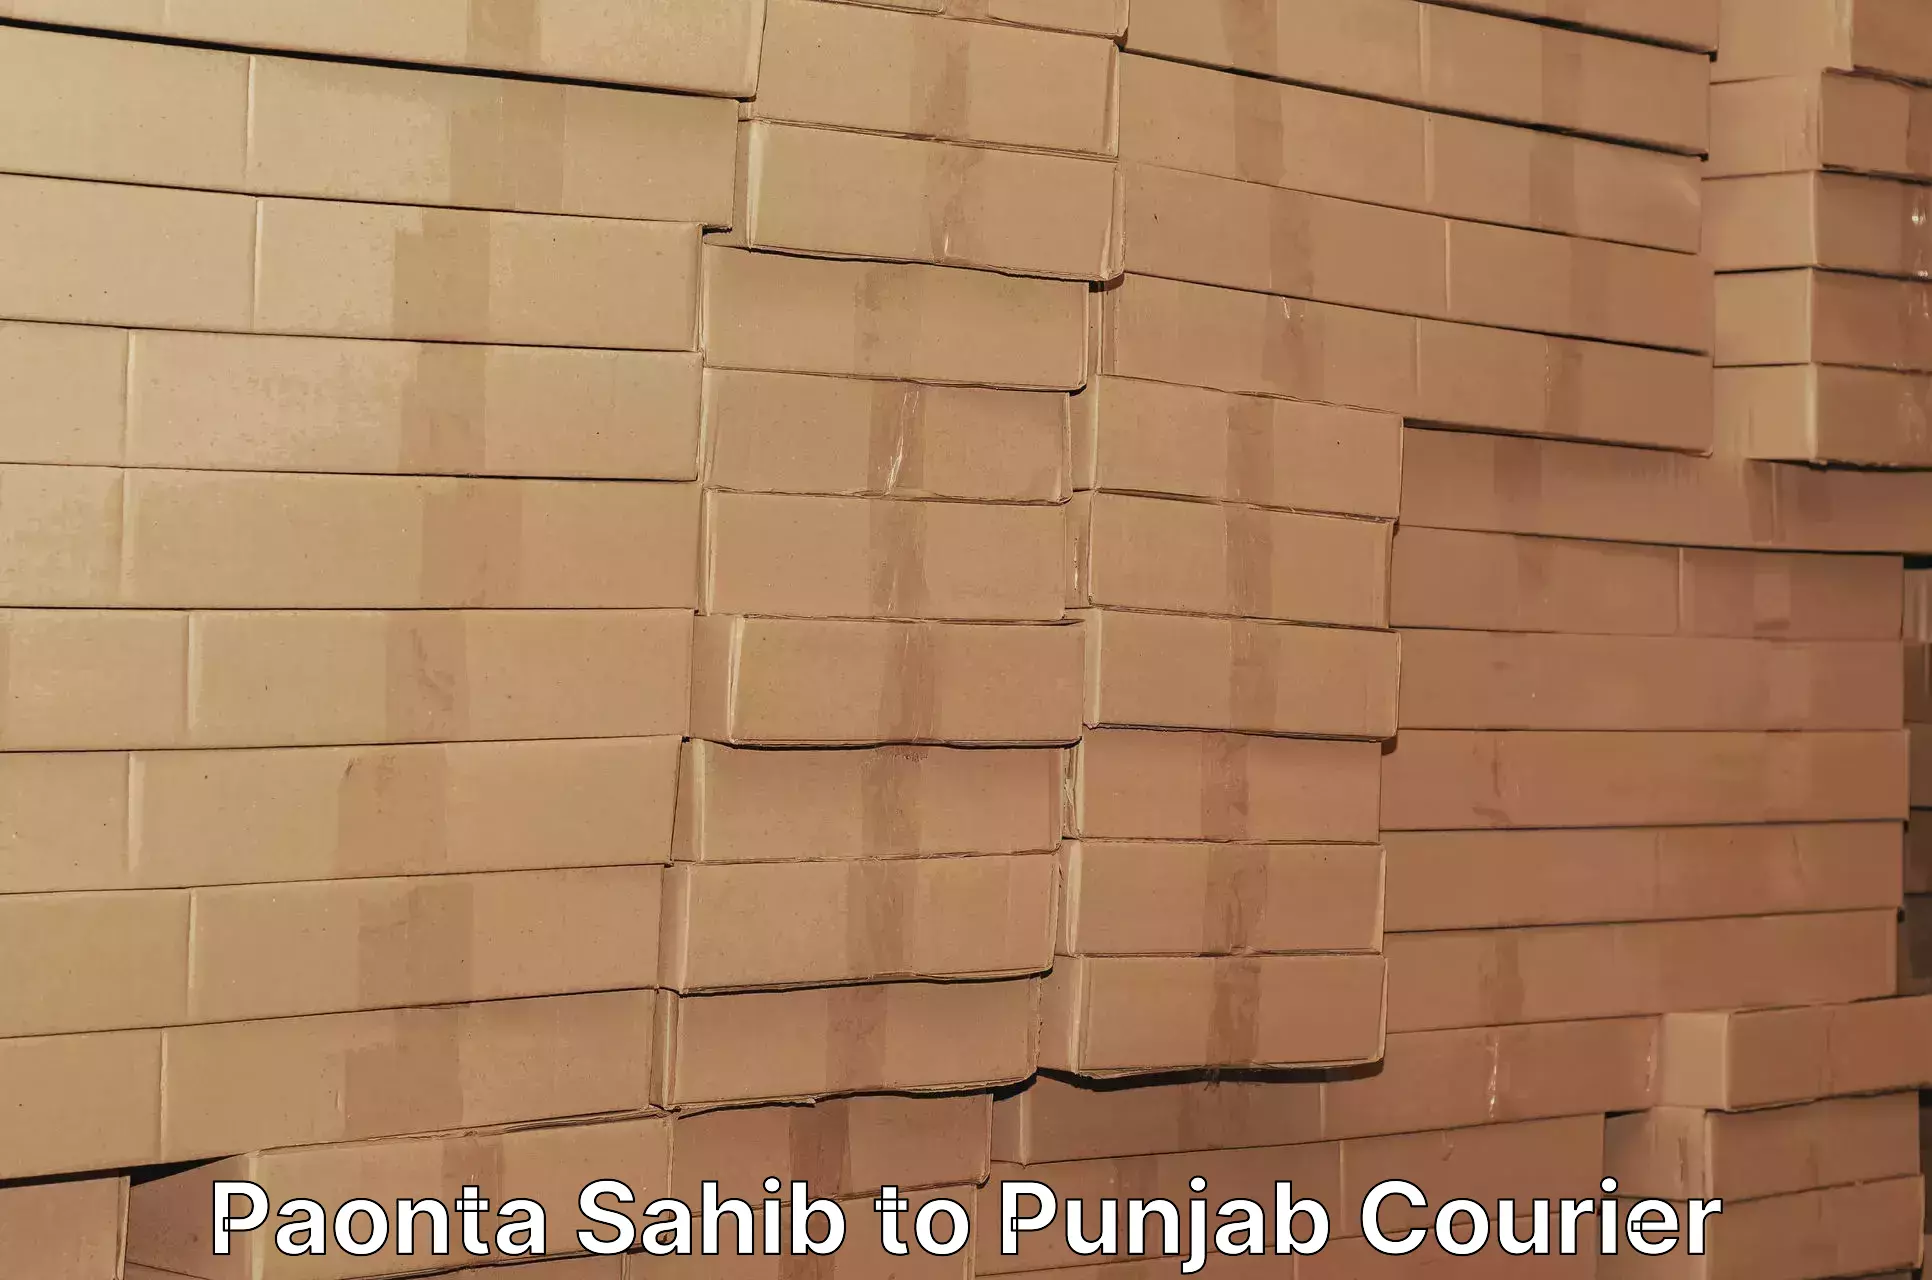 Logistics management Paonta Sahib to Central University of Punjab Bathinda